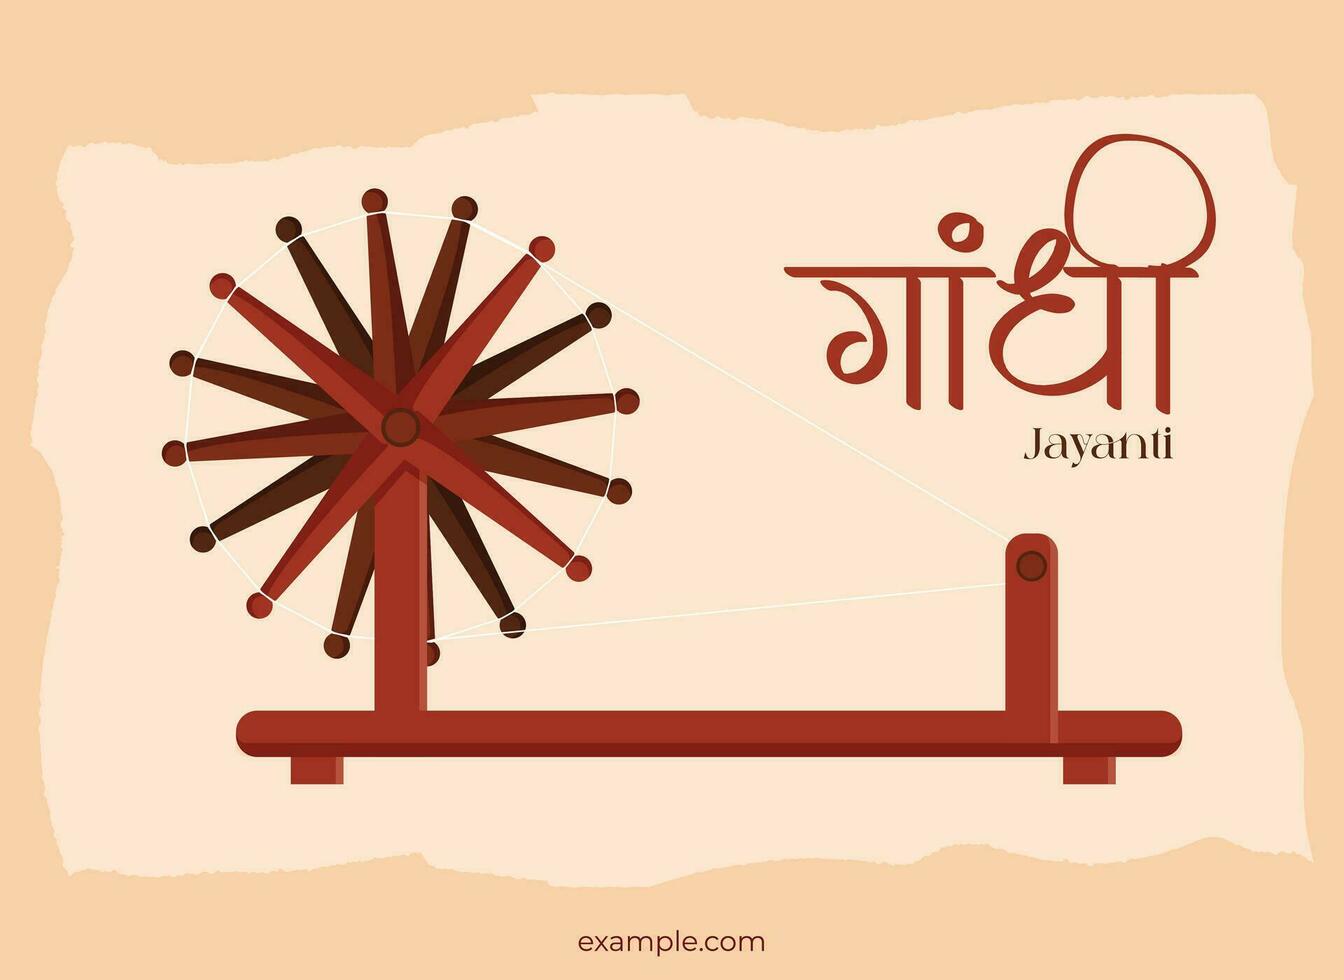 mahatma Gandhi Jayanti - 2e oktober met creatief ontwerp vector illustratie, Gandhi in Hindi